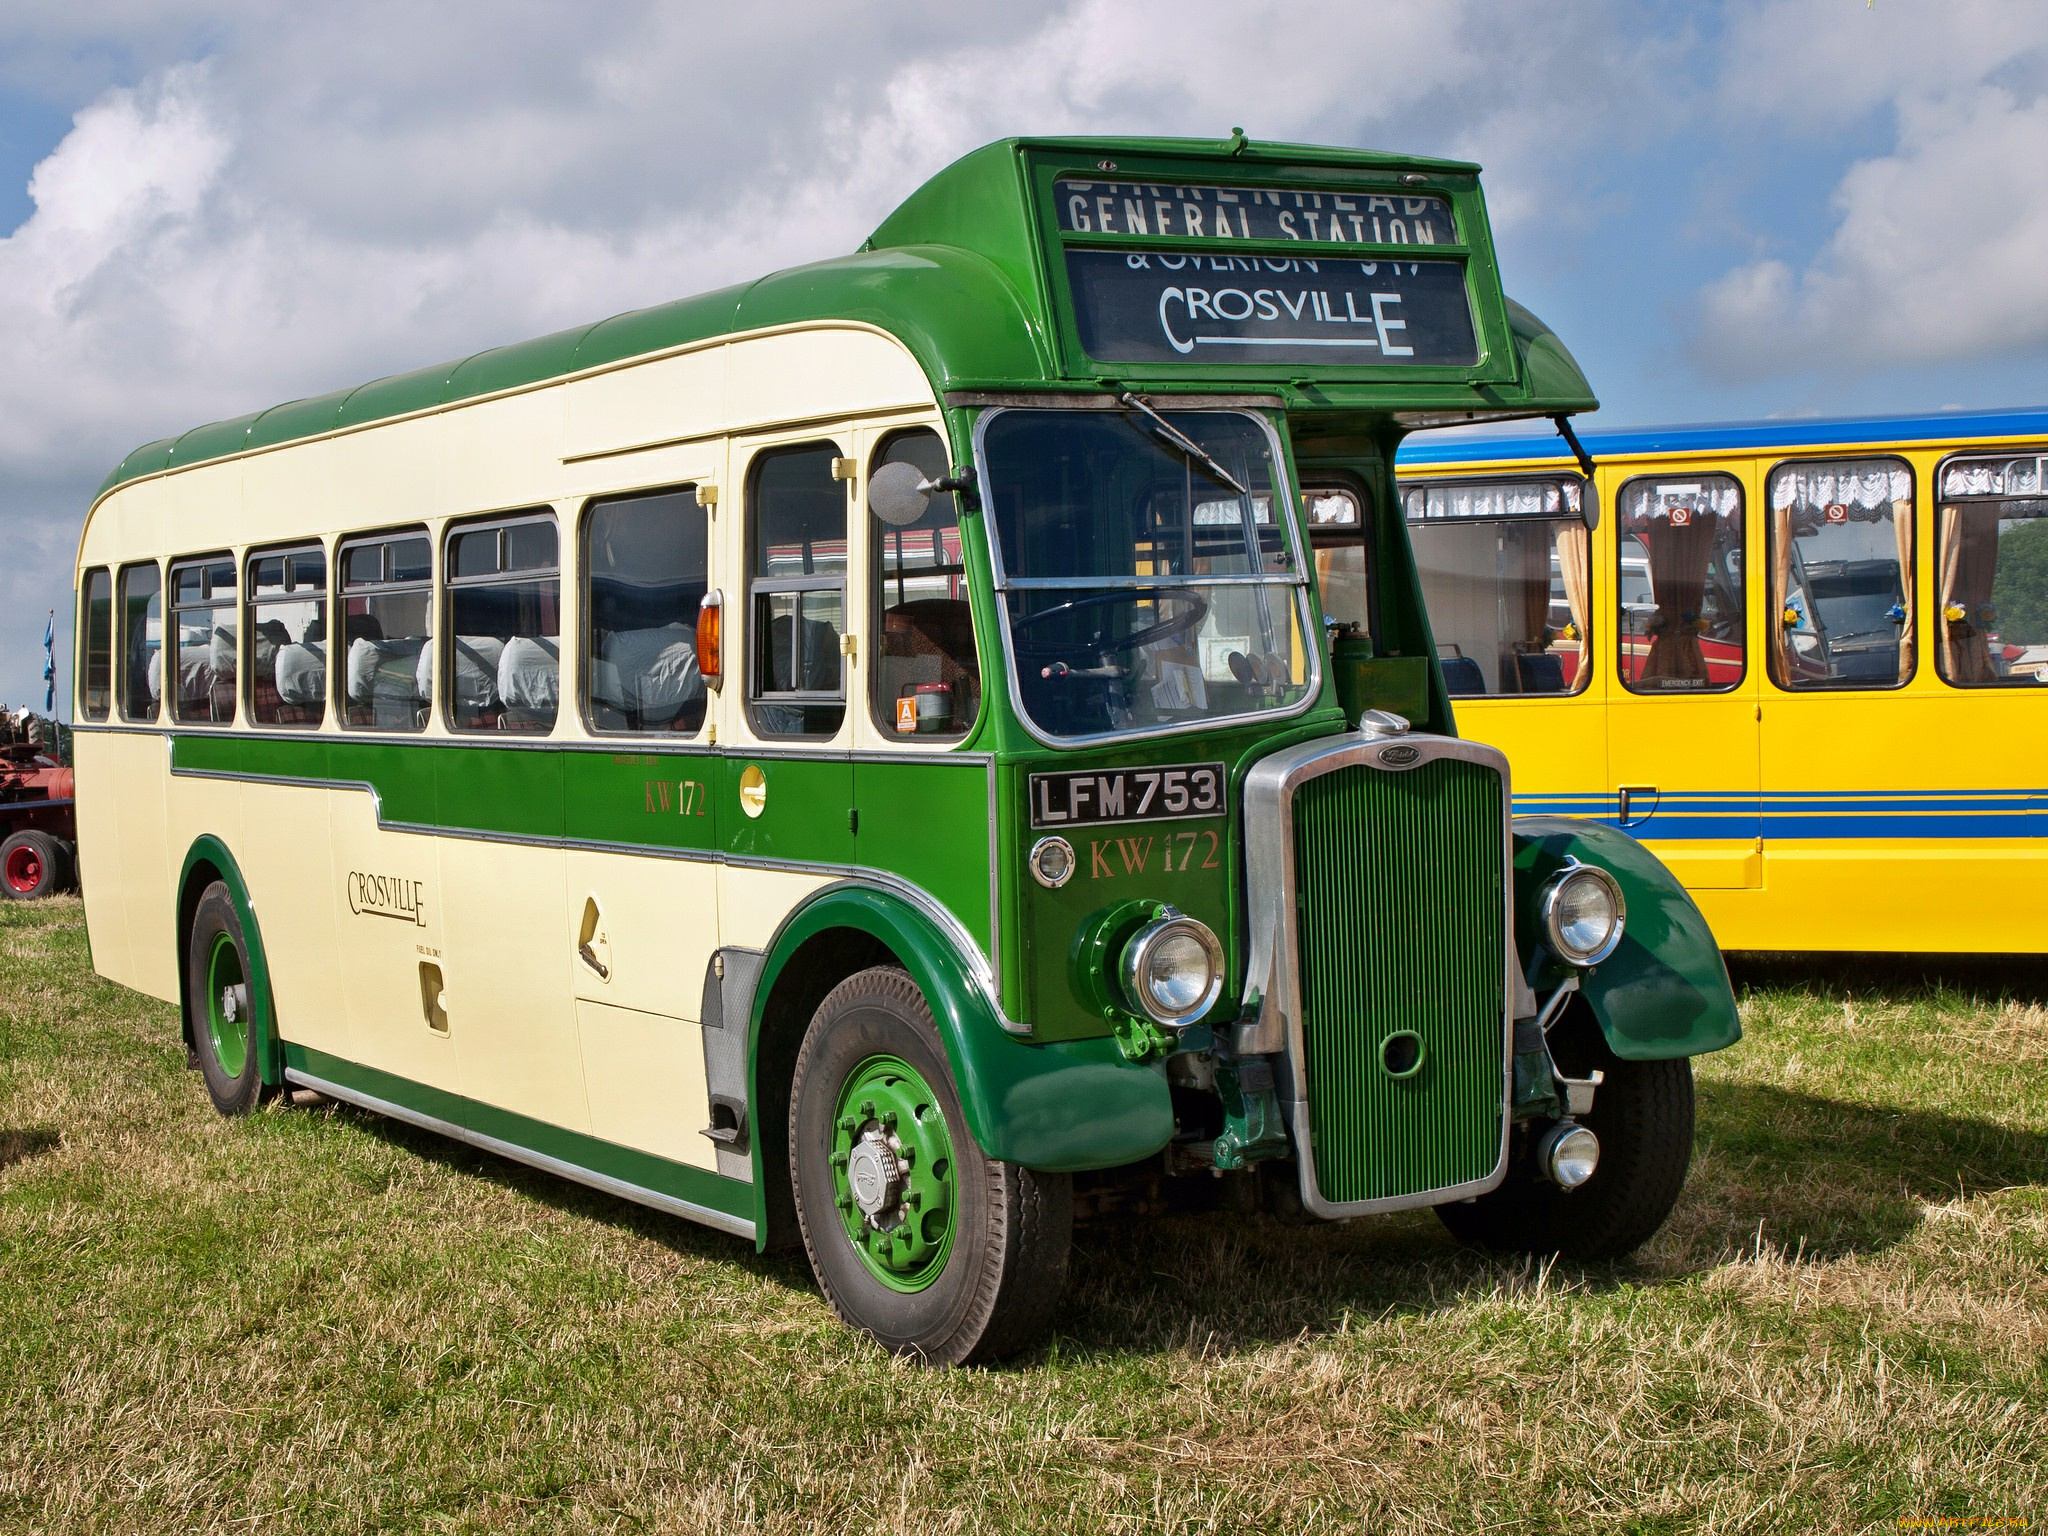 1950, bristol, l6becw, crosville, kw172, автомобили, автобусы, автобус, ретро, история